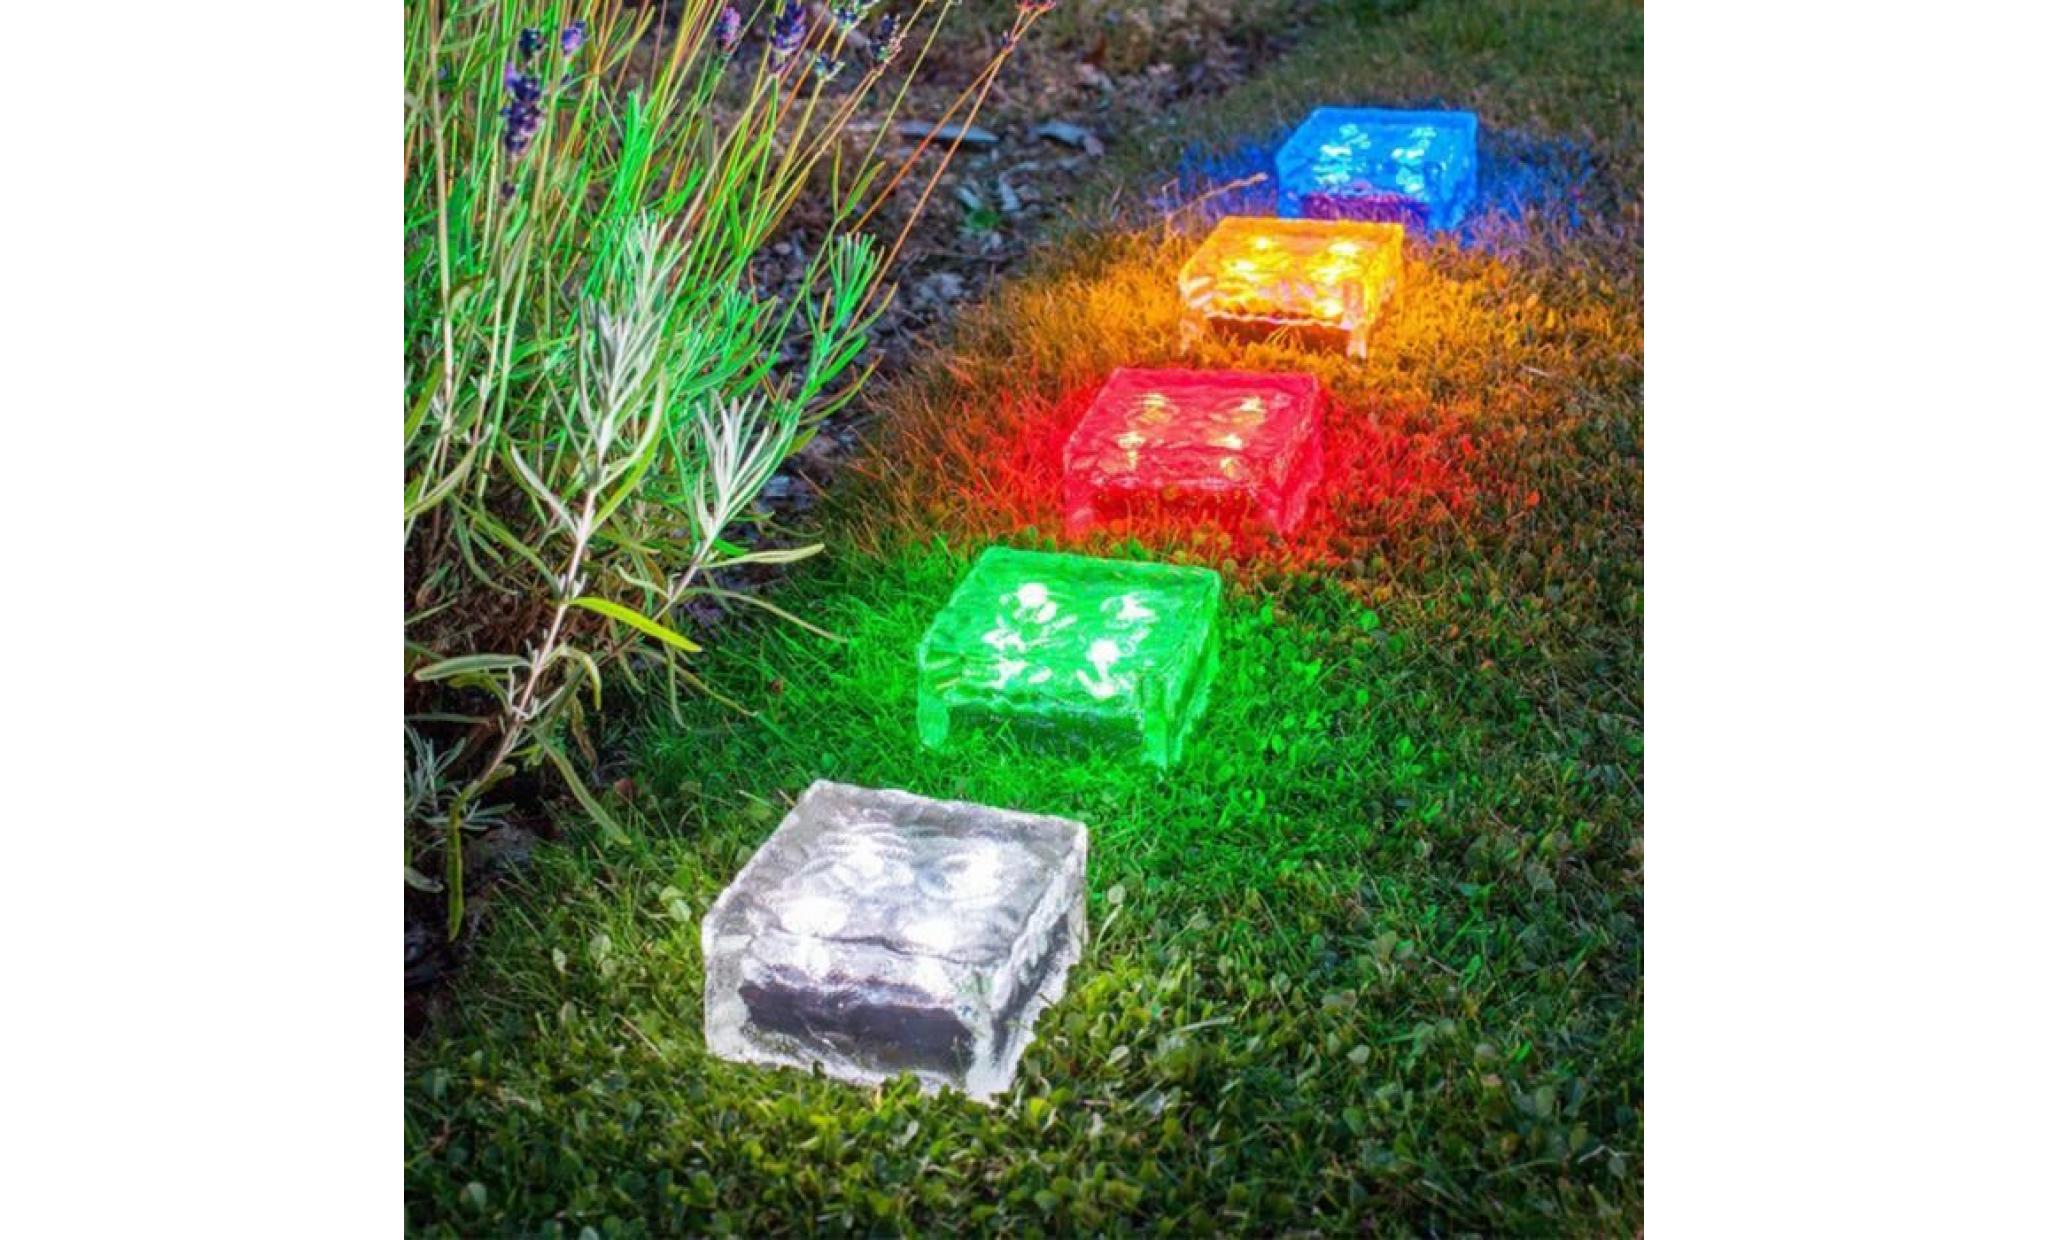 borne solaire solaire imperméable à l'eau led rock light path jardin ice cube brick decor #si 305 pas cher